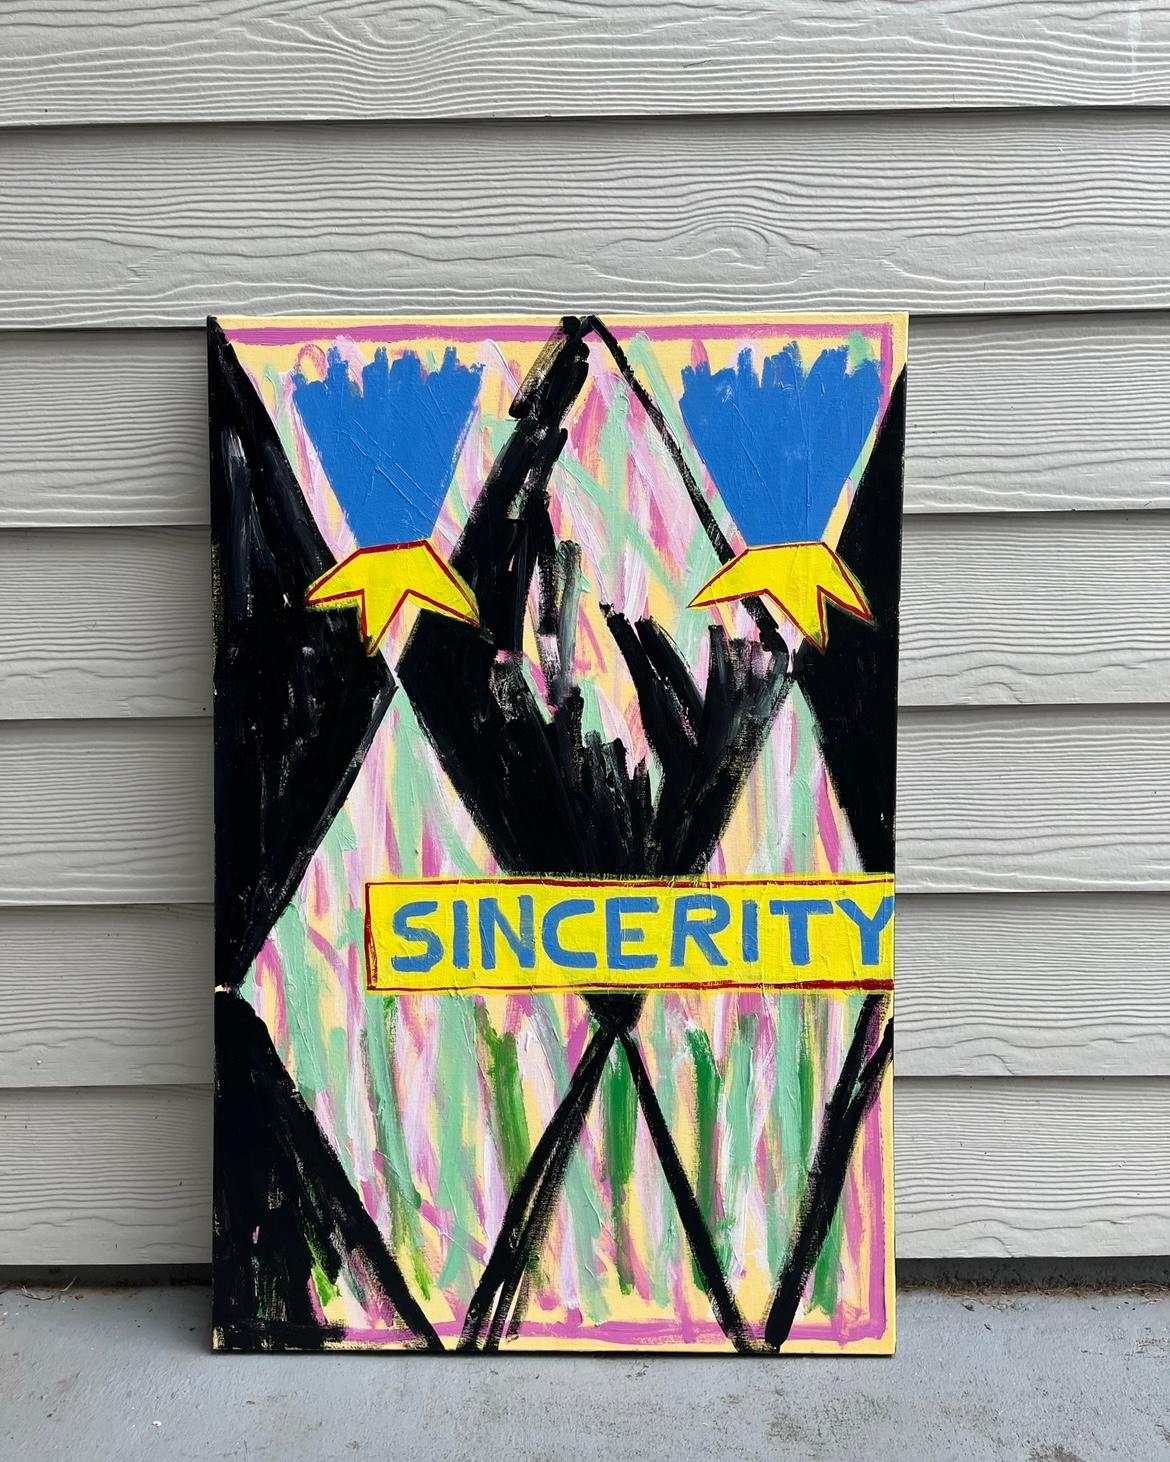 “Sincerity”